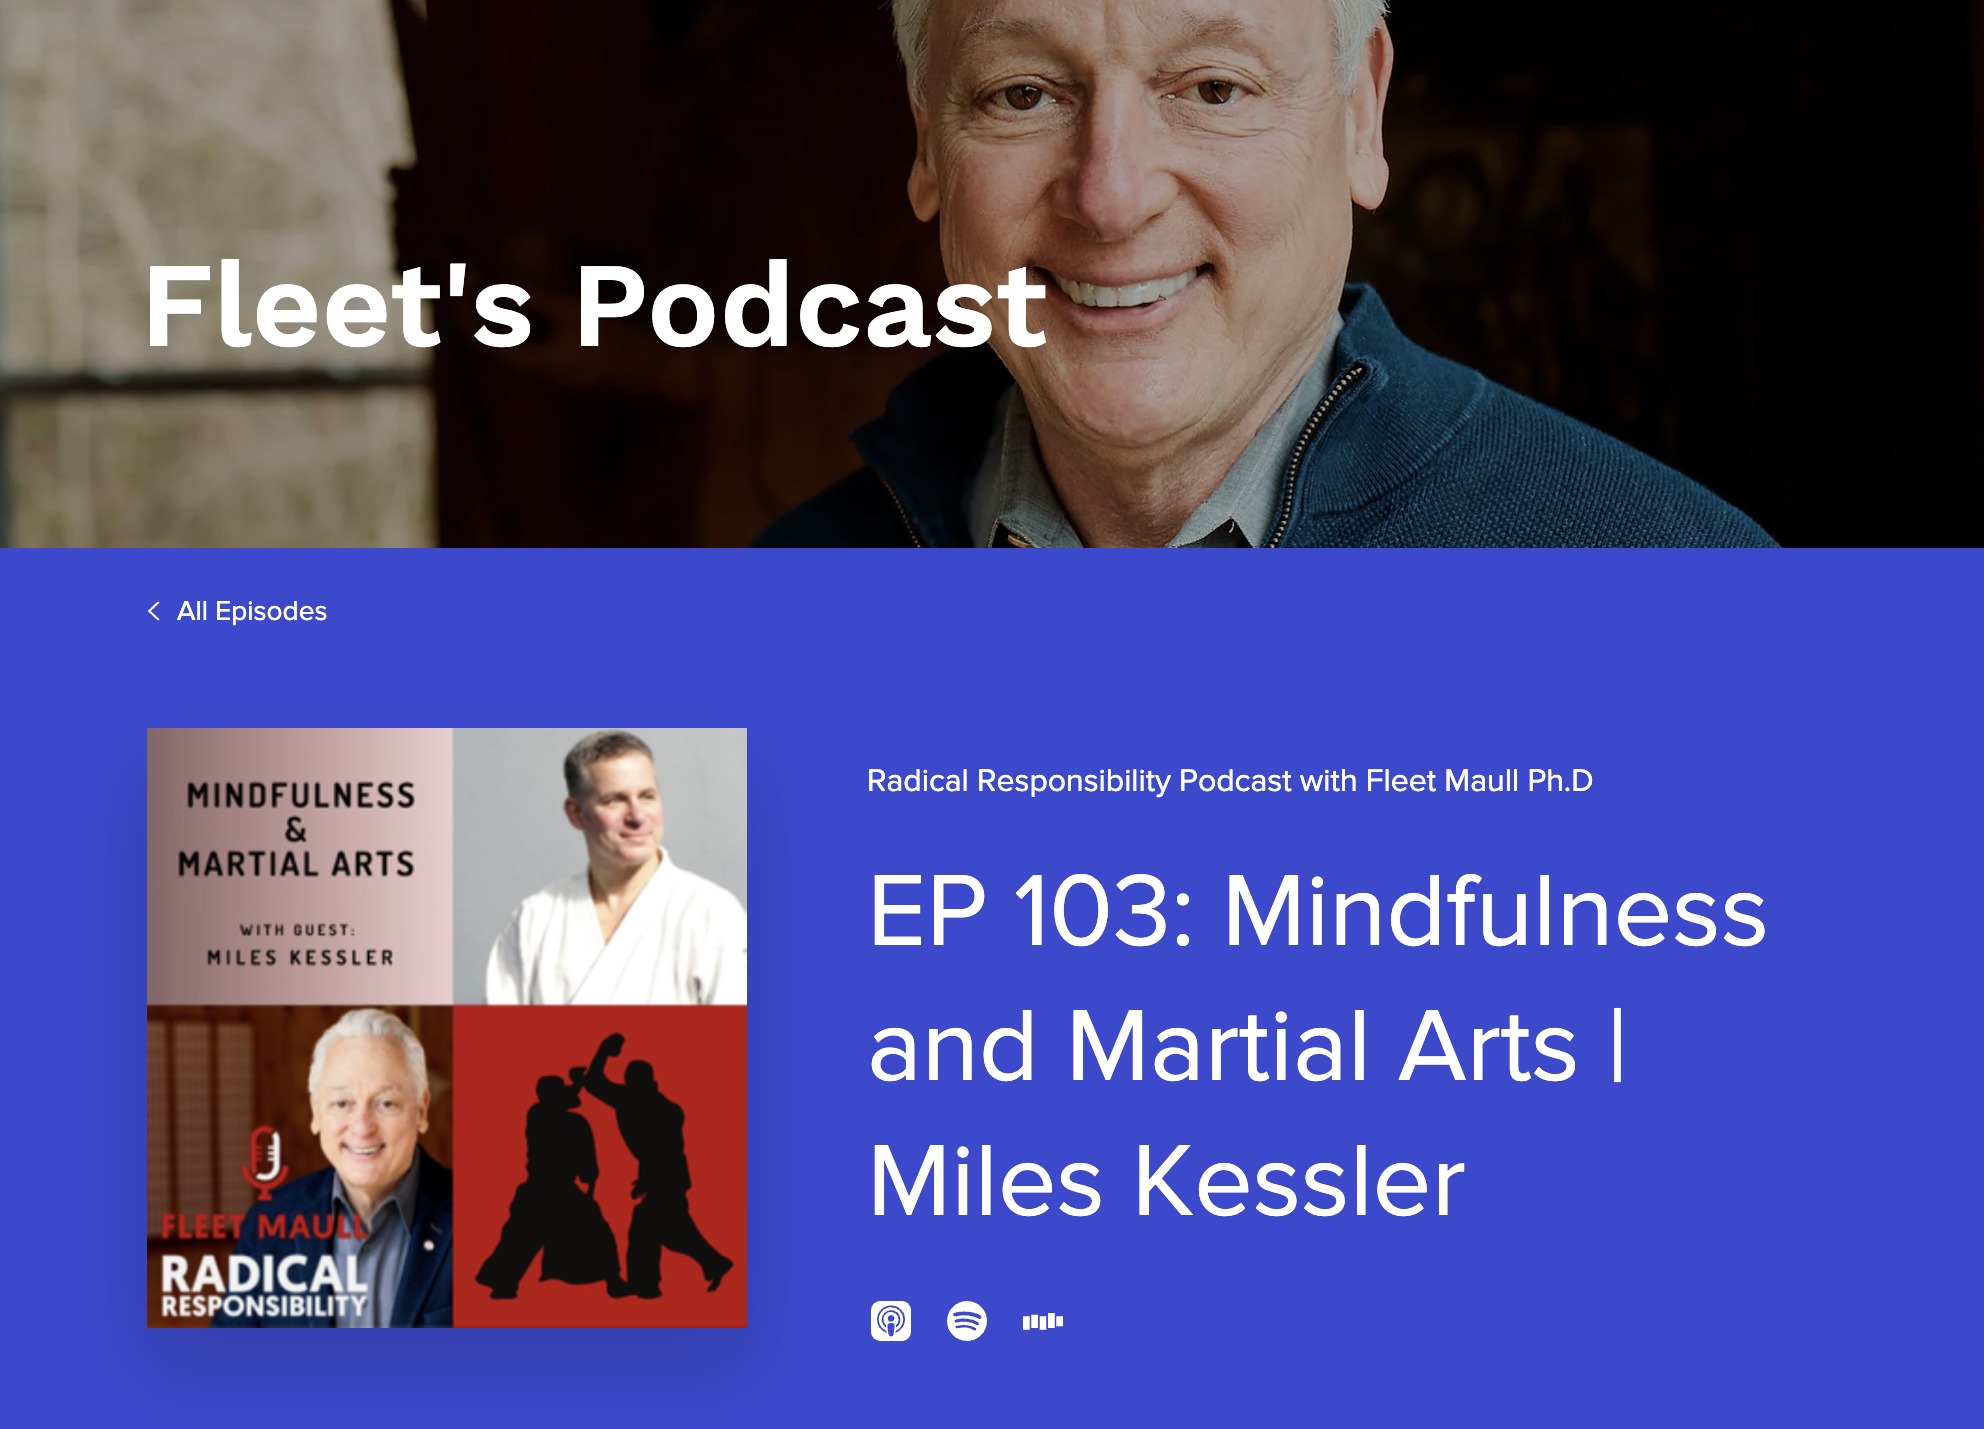 Miles Kessler on Mindfulness & Martial Arts